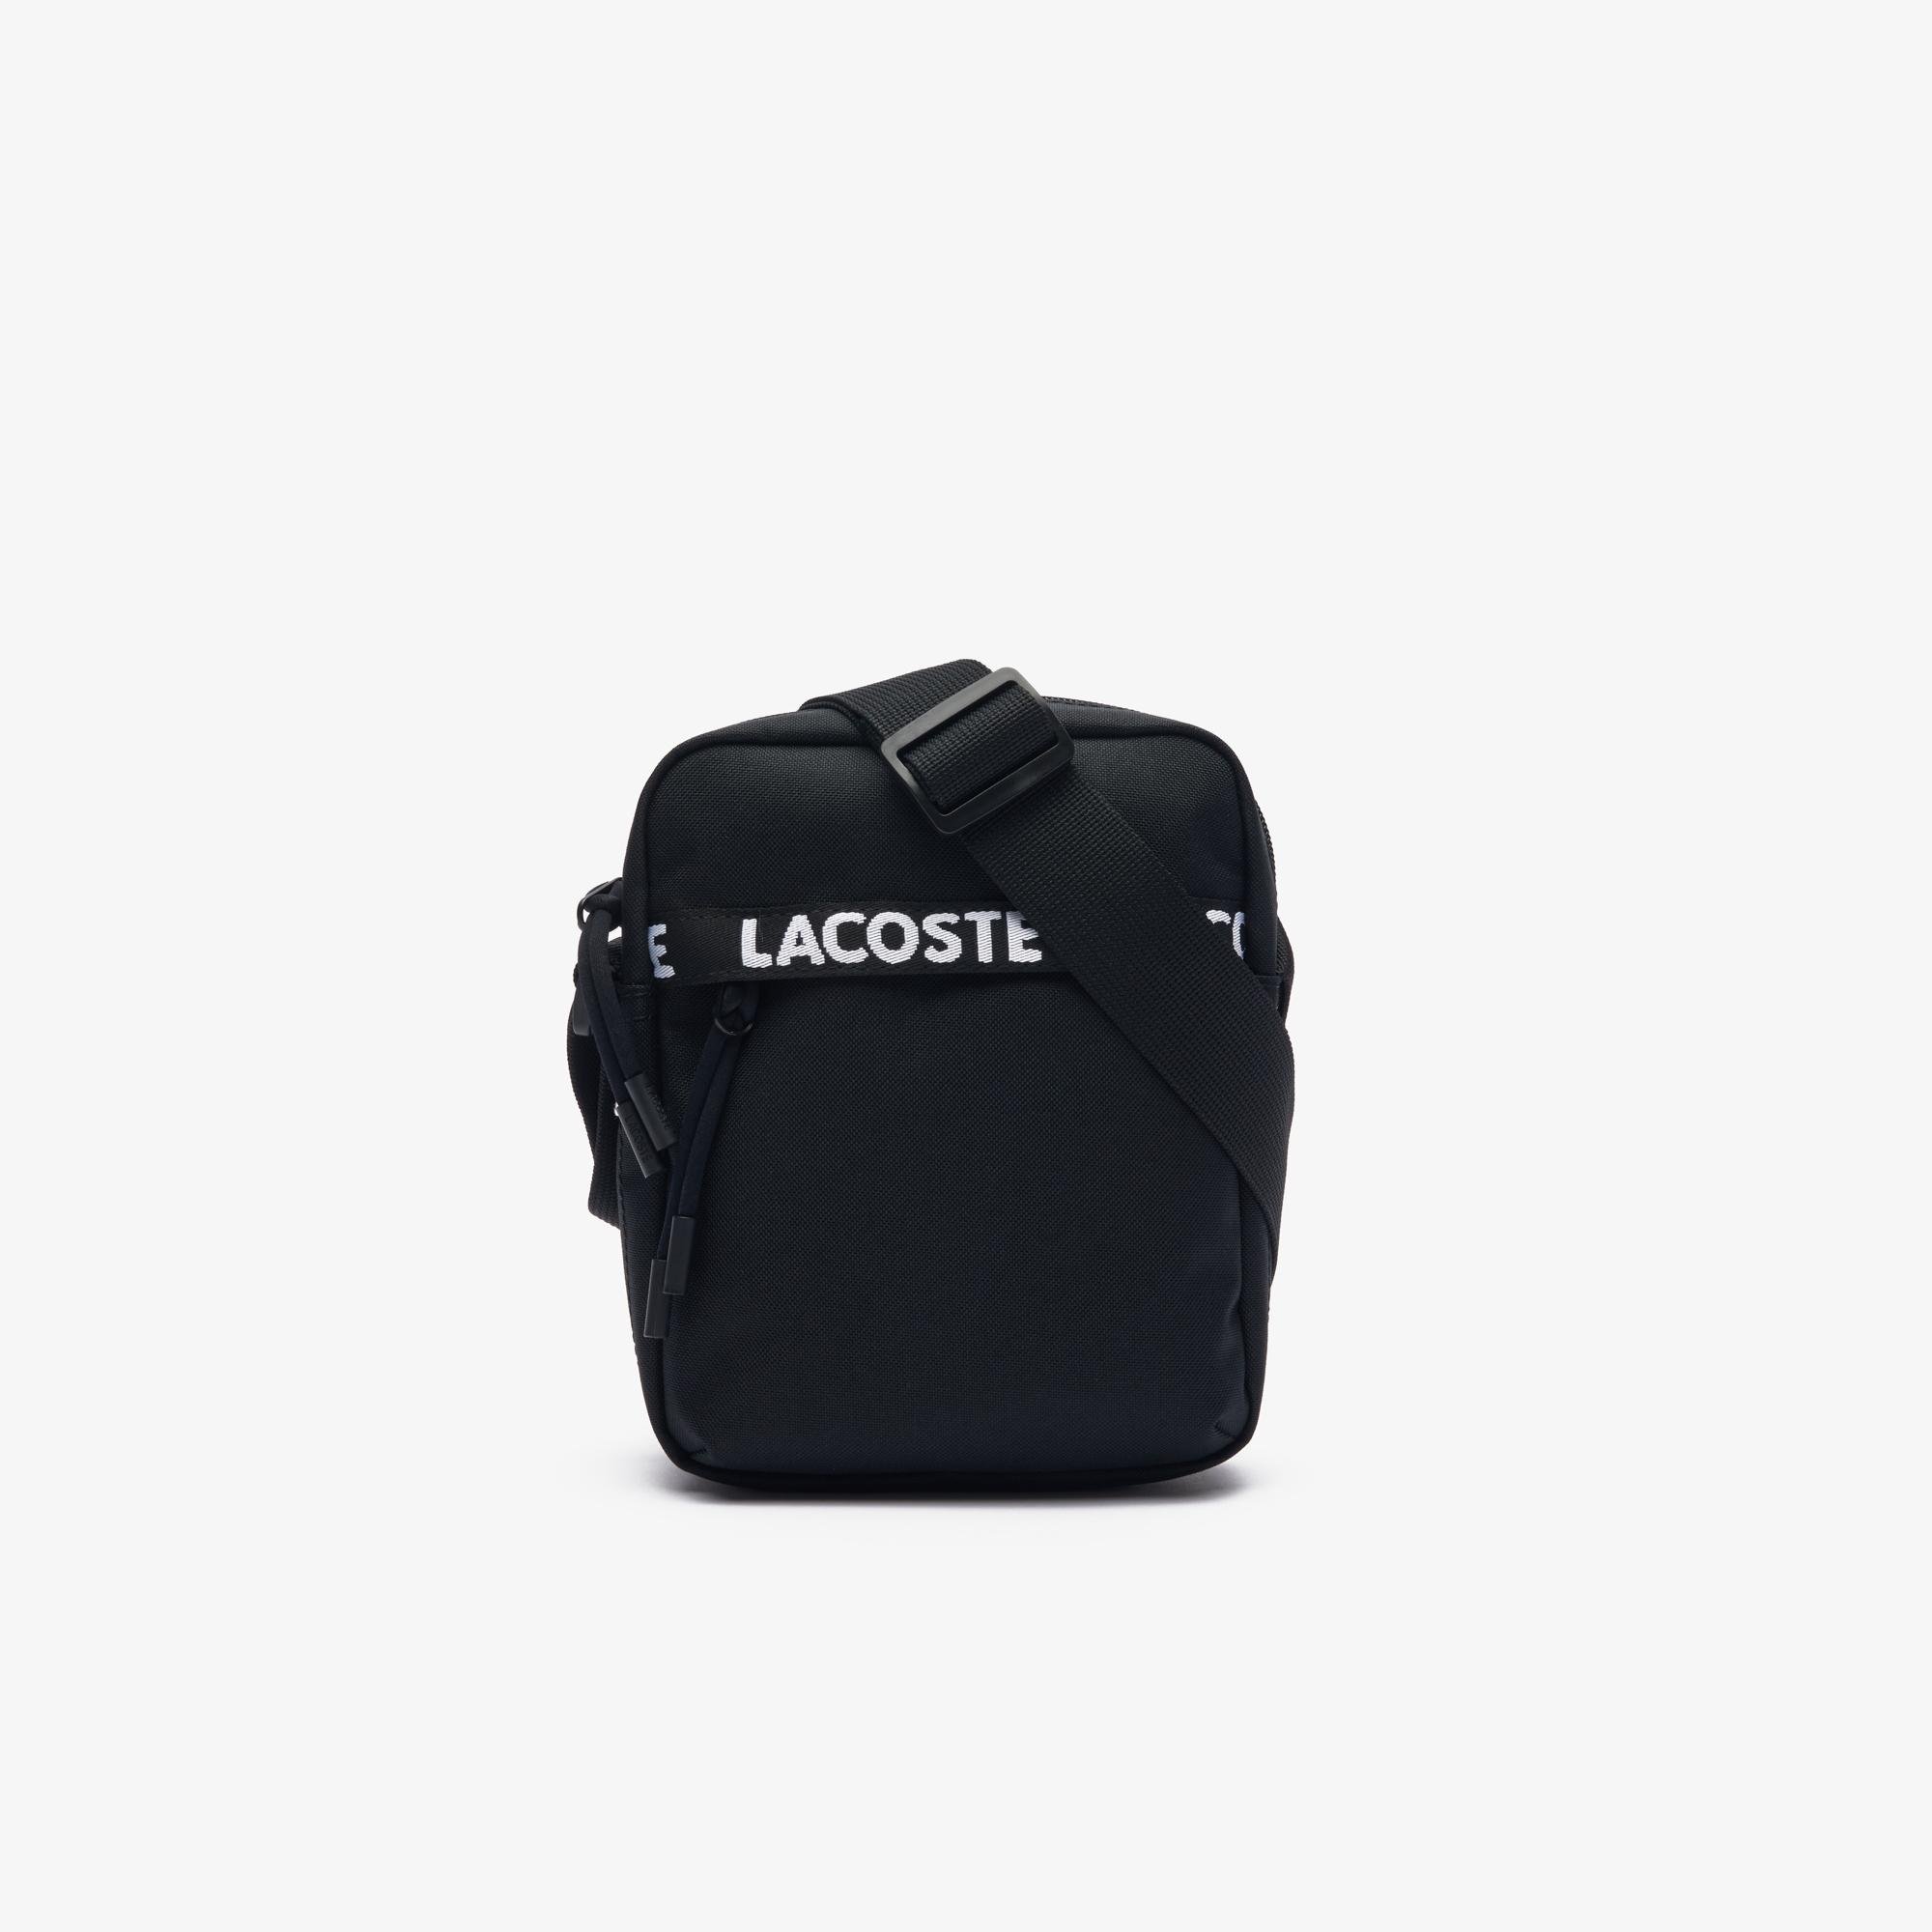 Lacoste Men's Bag